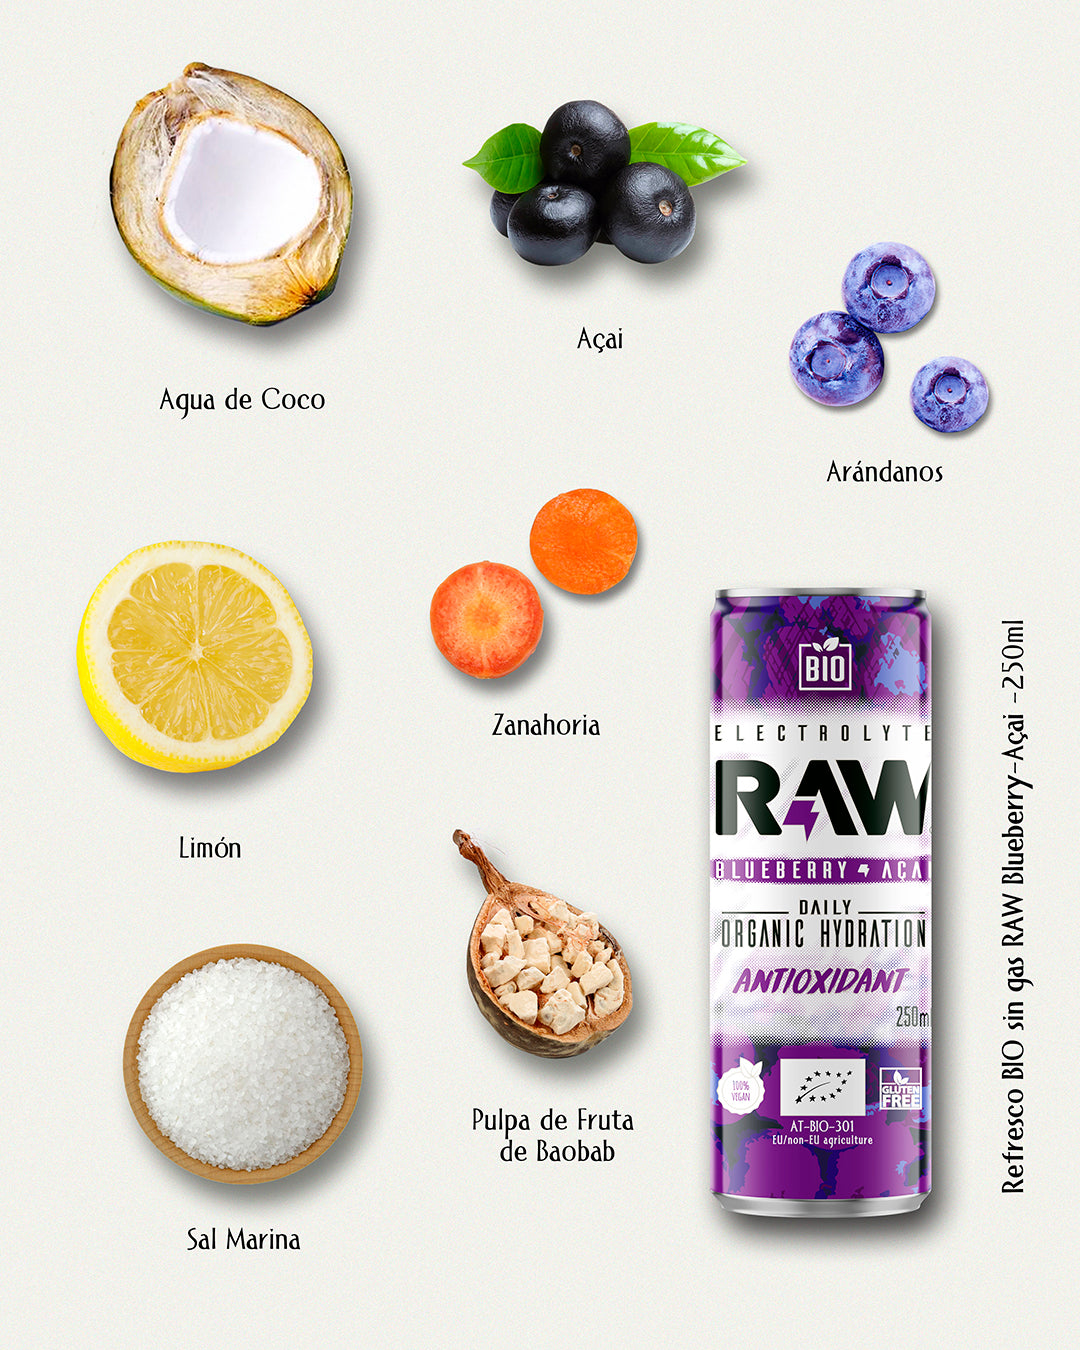 raw superdrink es bueno para los problemas de estómago